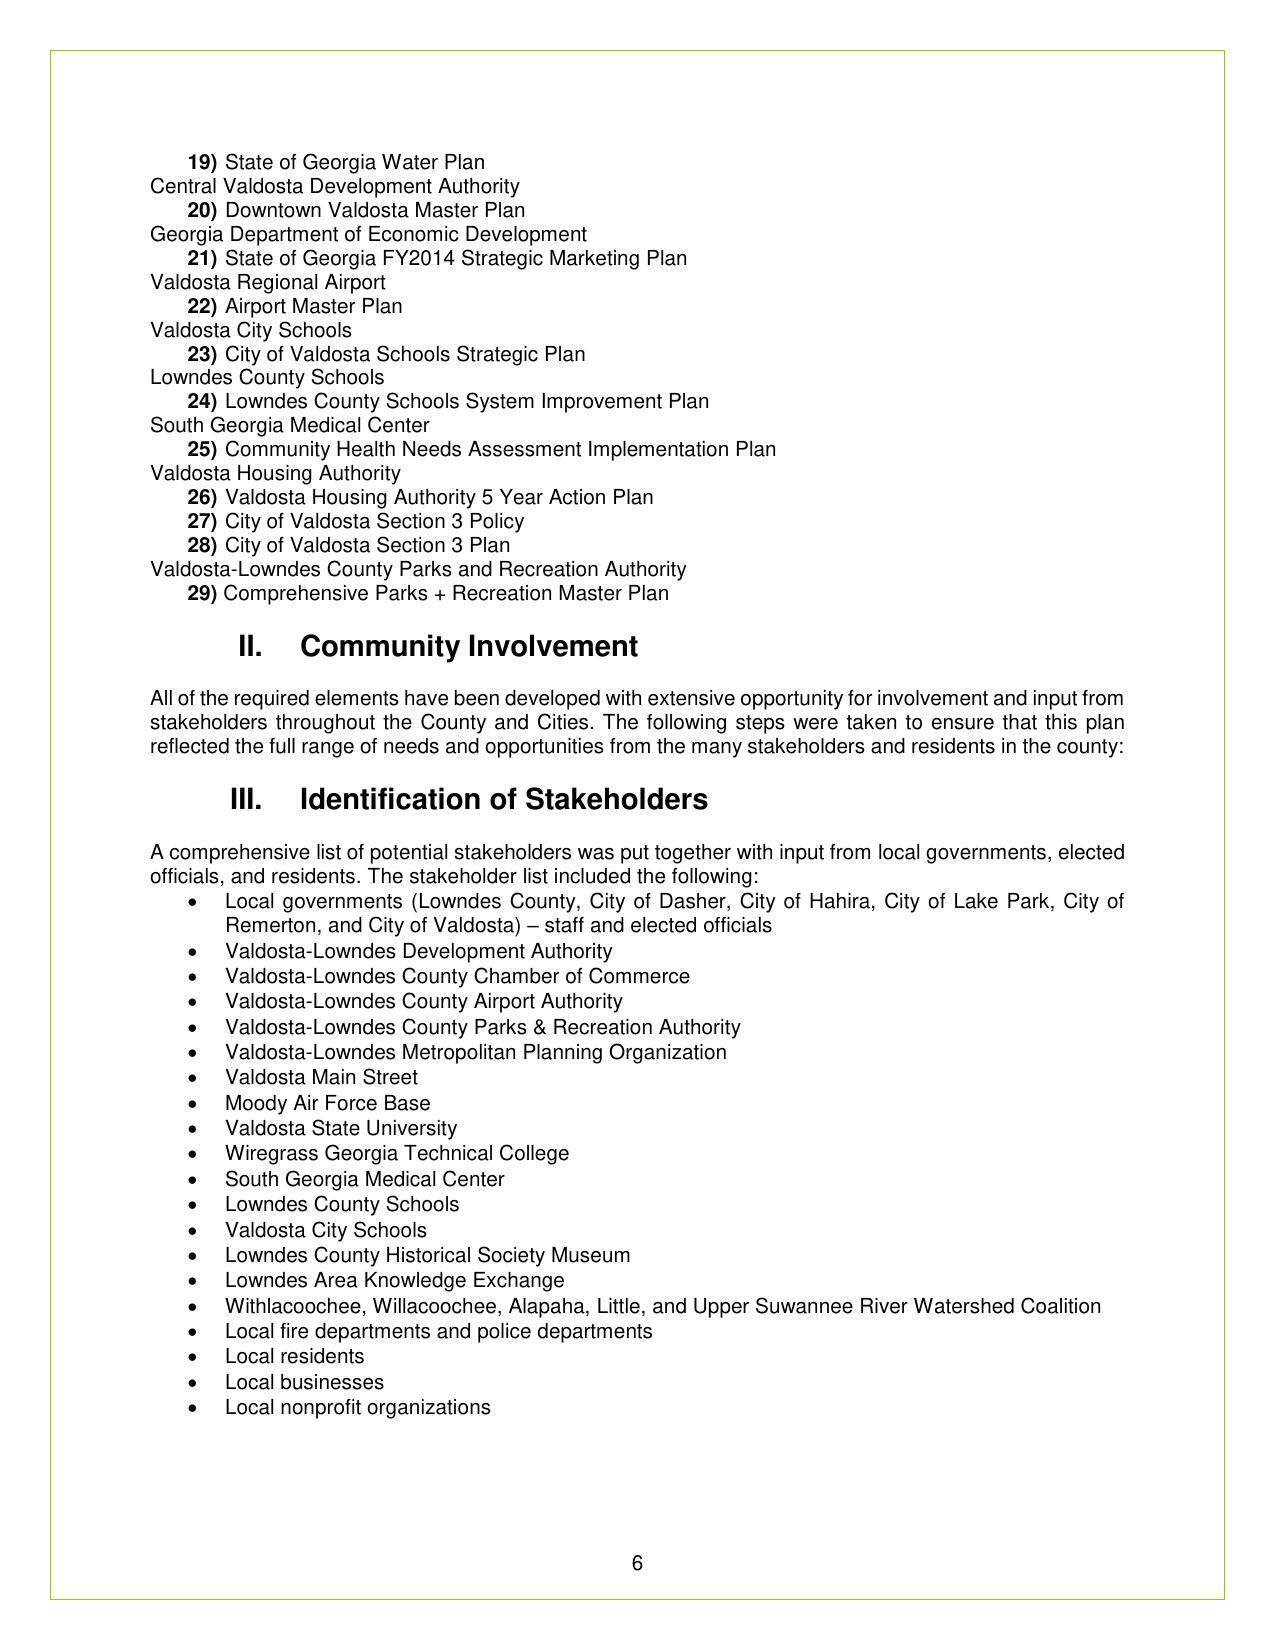 II. Community Involvement, III. Identification of Stakeholders